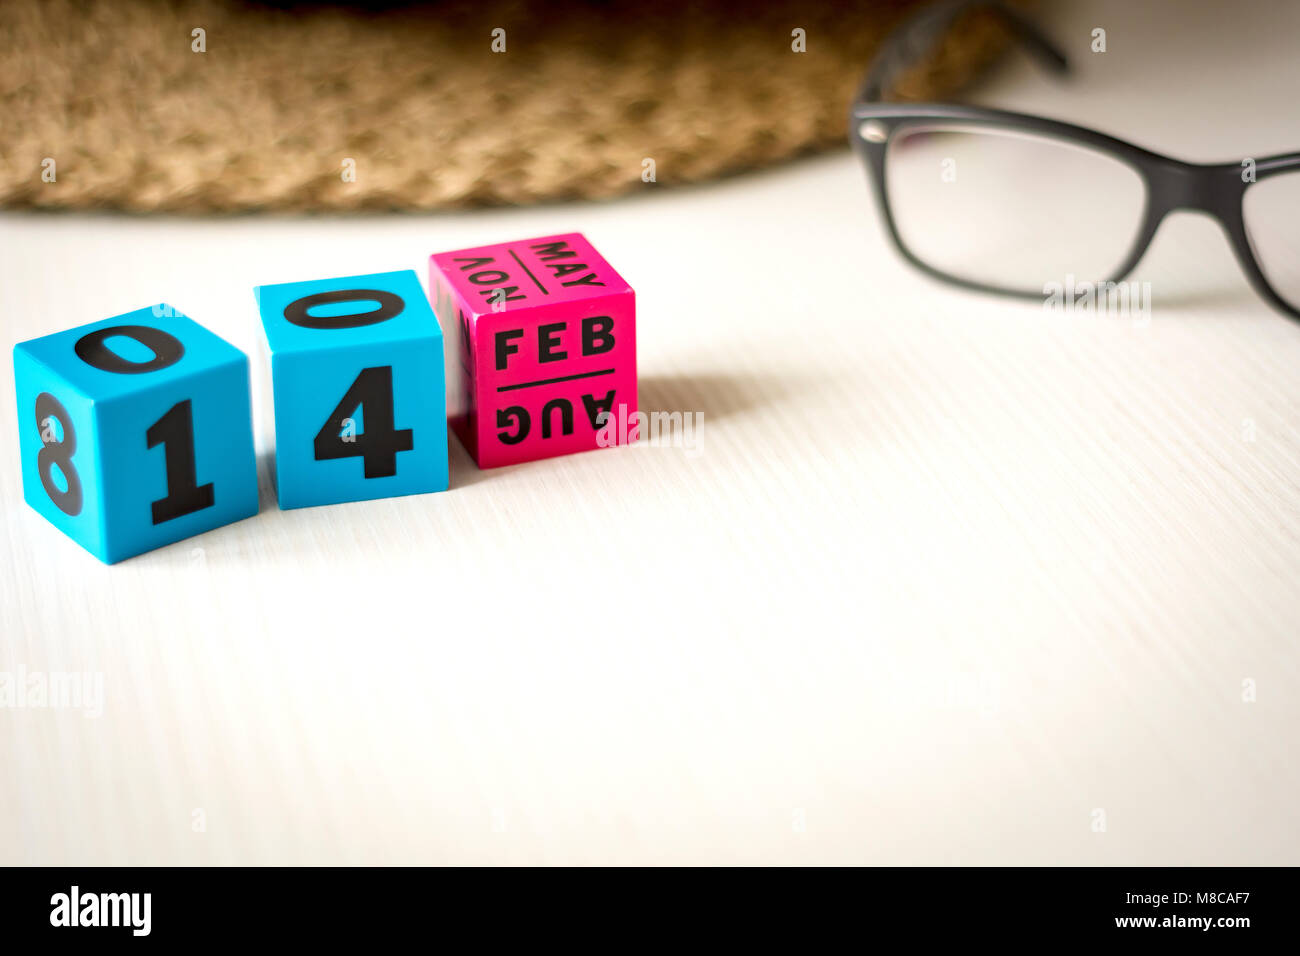 Calendario perpetuo moderno compuesto de cubos de colores y fijado en la fecha del 14 de febrero Foto de stock